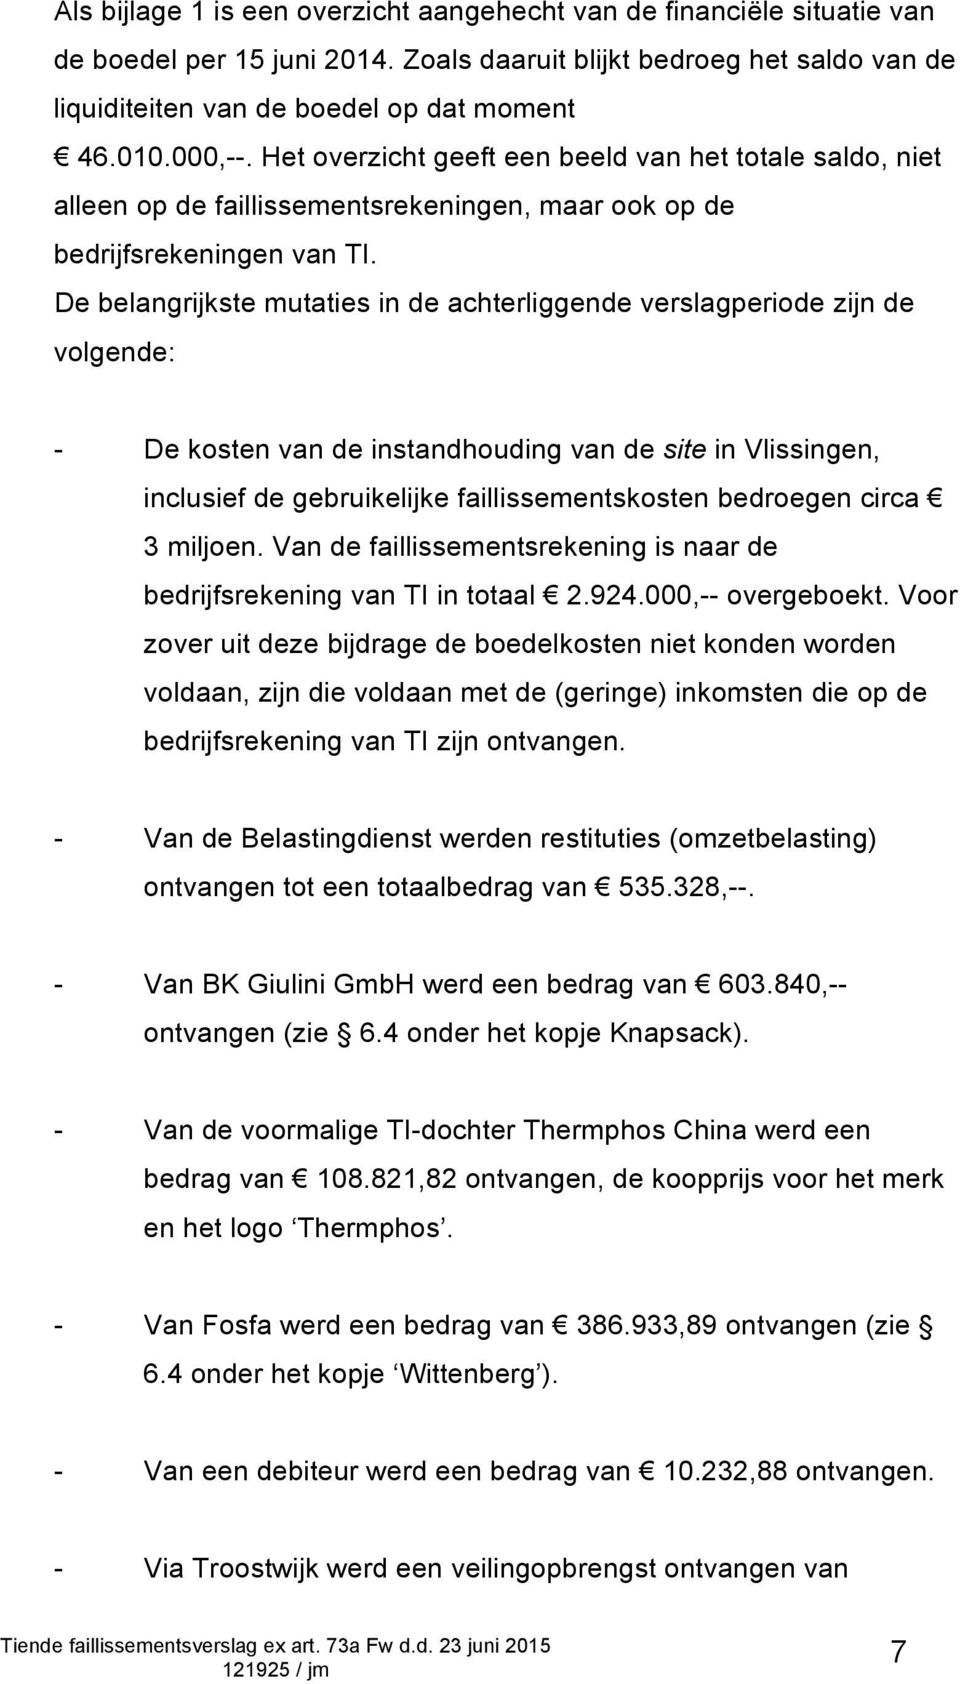 De belangrijkste mutaties in de achterliggende verslagperiode zijn de volgende: - De kosten van de instandhouding van de site in Vlissingen, inclusief de gebruikelijke faillissementskosten bedroegen